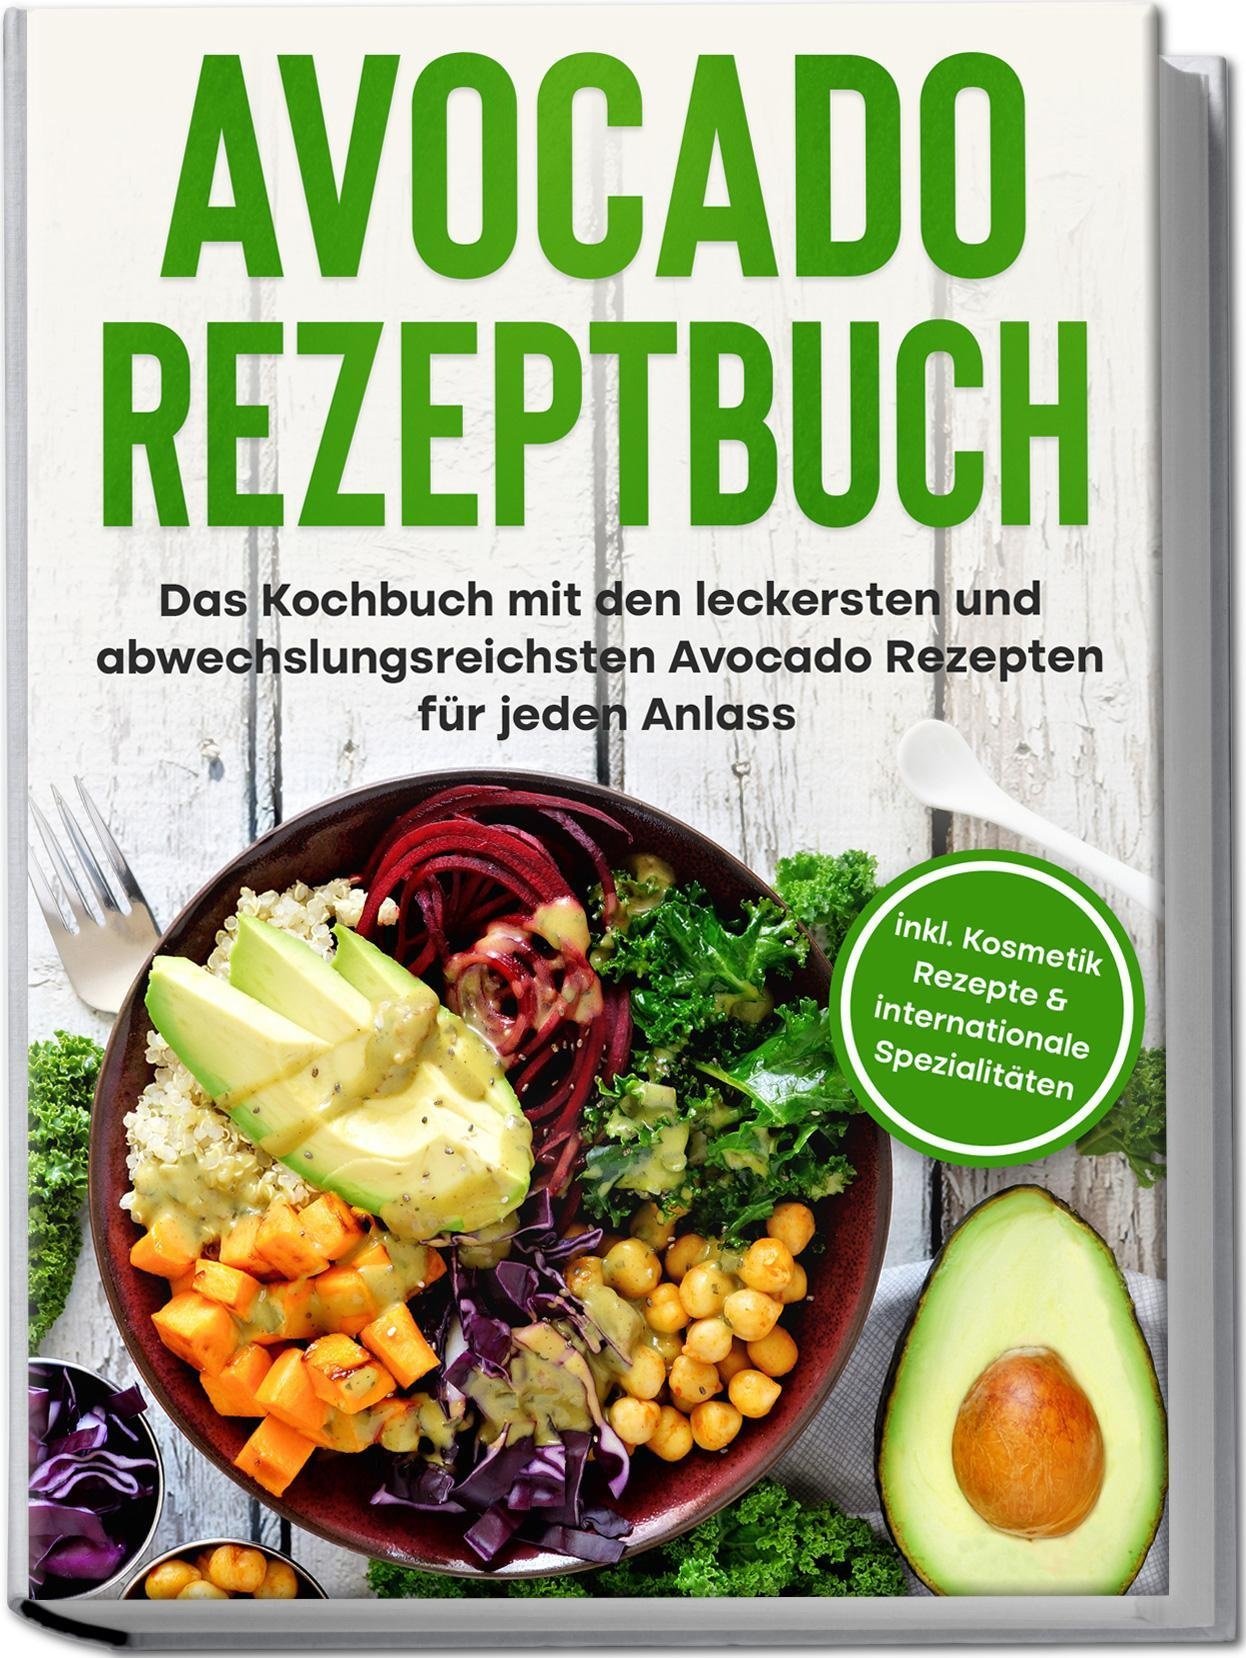 Avocado Rezeptbuch: Das Kochbuch Mit Den Leckersten Und Abwechslungsreichsten Avocado Rezepten Für Jeden Anlass - Inkl. Kosmetik Rezepte & Internation